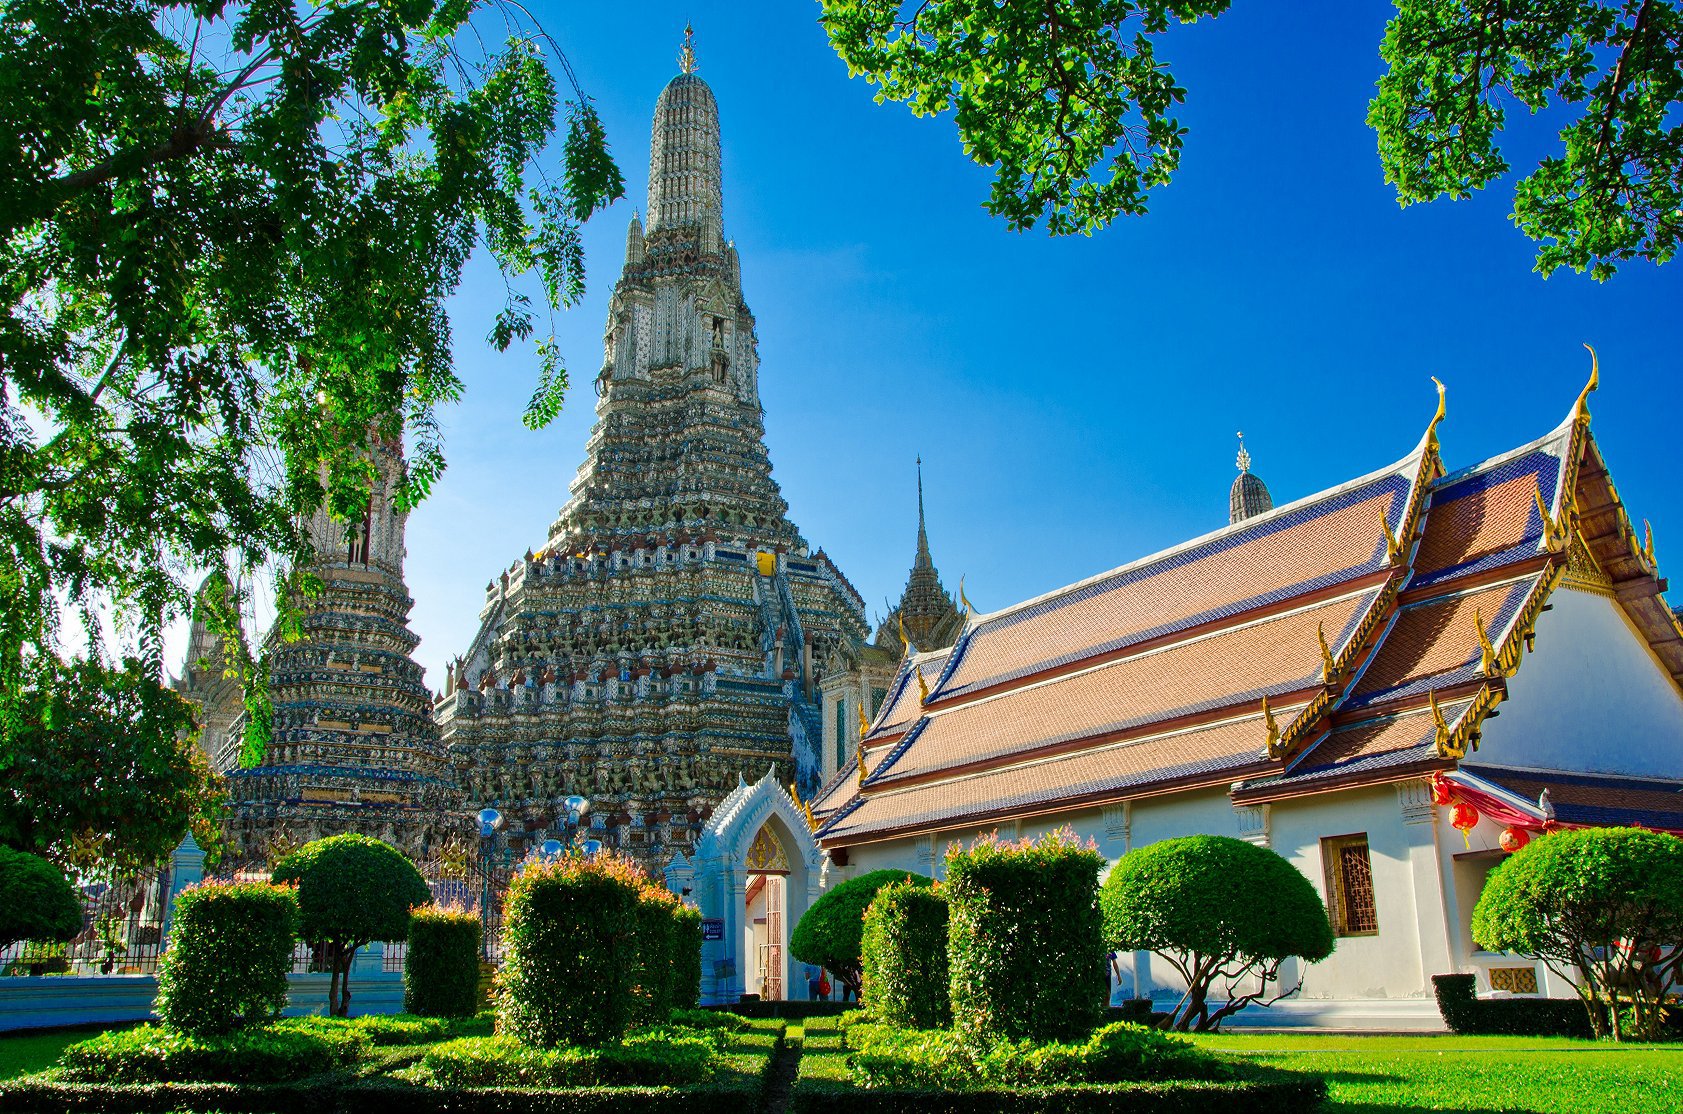 曼谷:是泰国的首都,也是东南亚第二大城市,被誉为"天使之城".